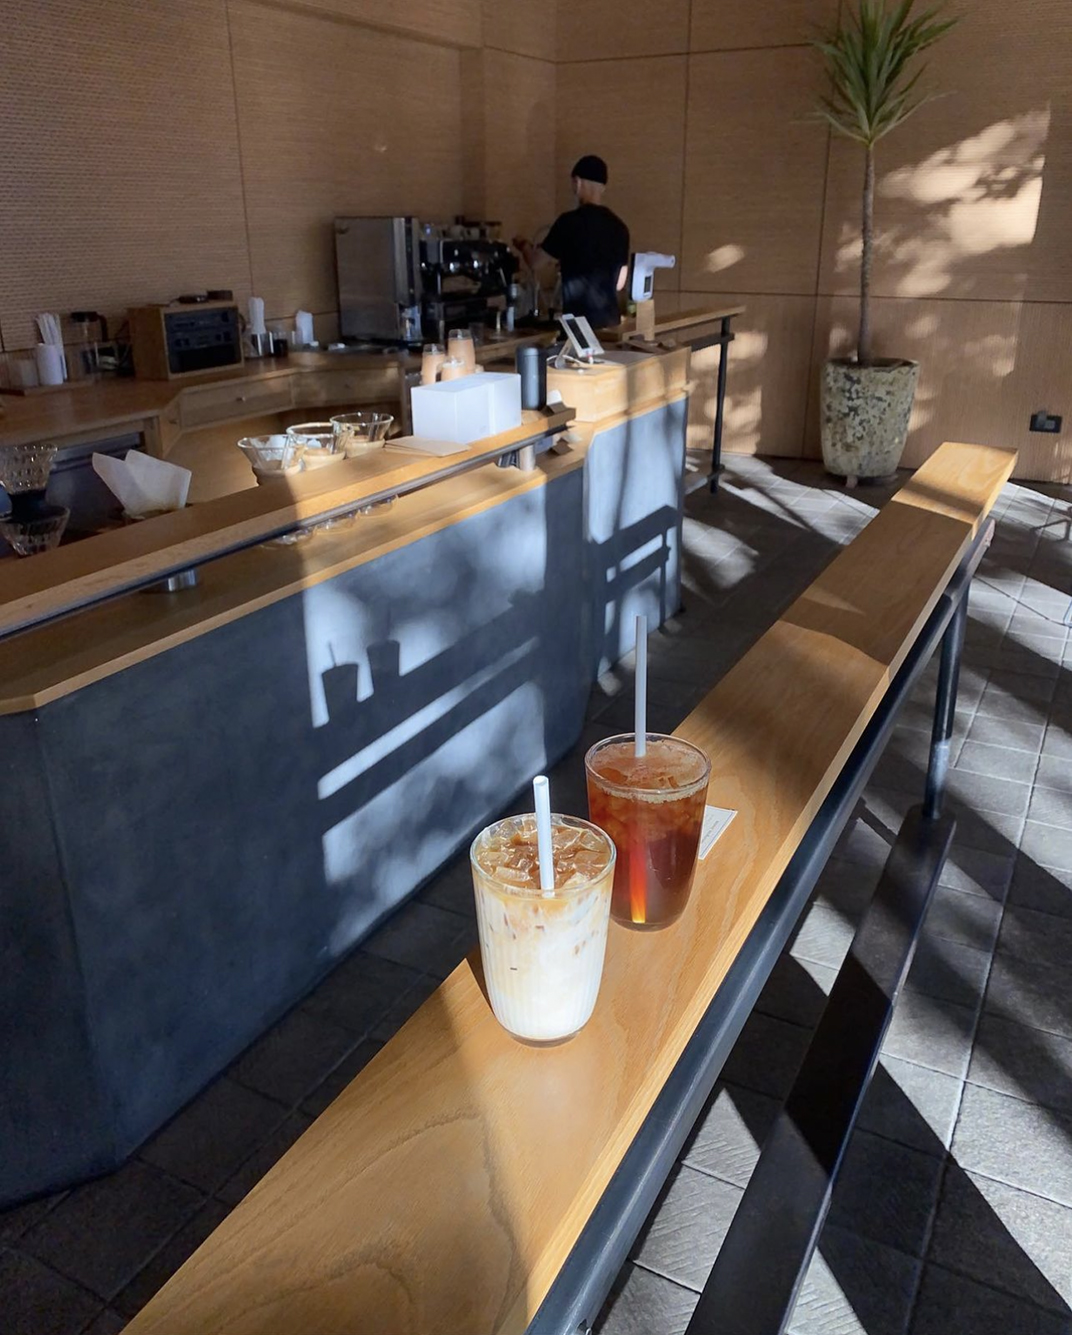 浅木色咖啡馆 带来的清新气息 韩国 釜山 珠海 东莞 上海 北京 广州 武汉 咖啡店 餐饮商业 logo设计 vi设计 空间设计